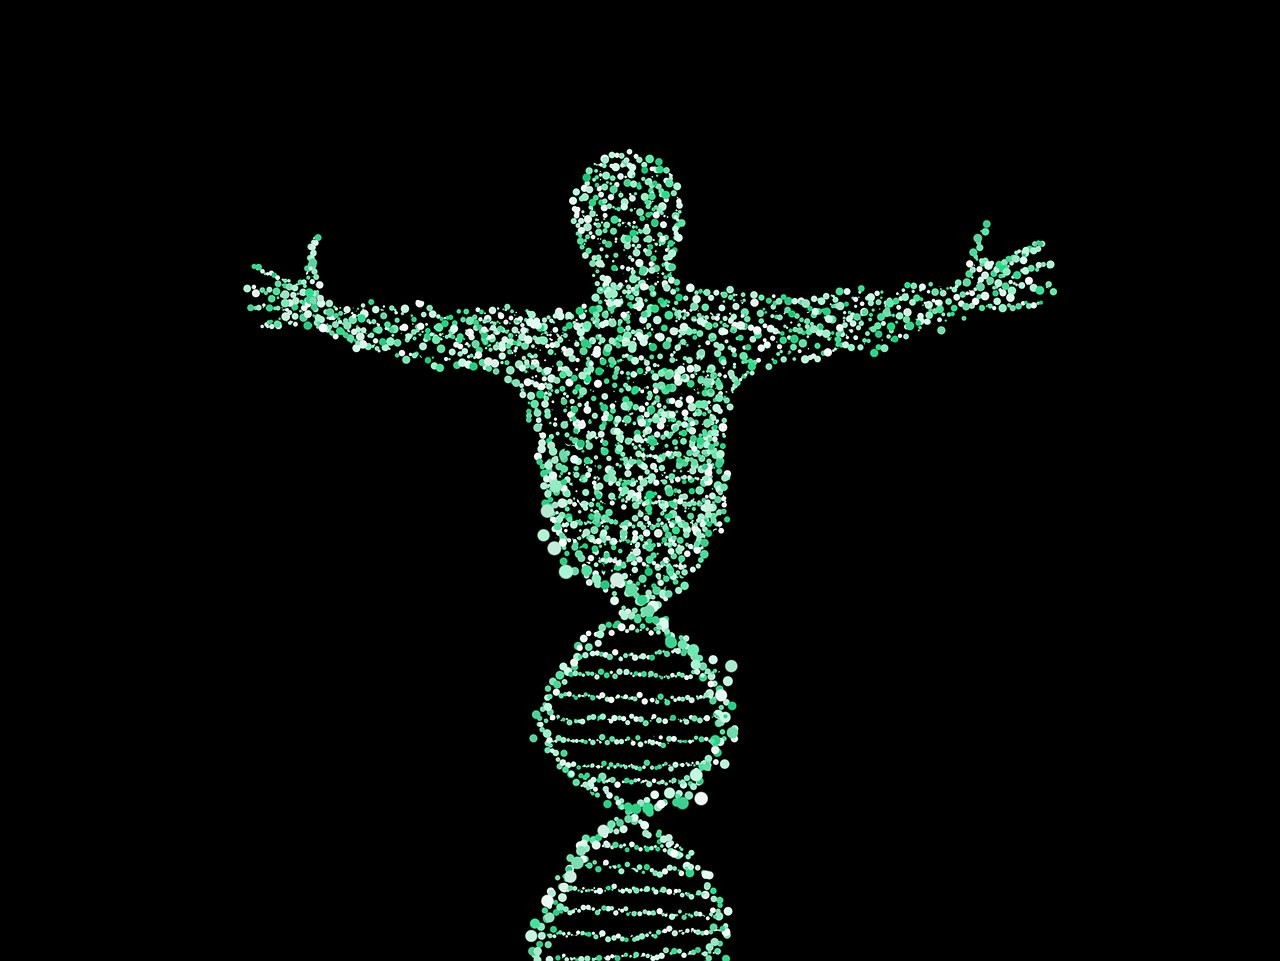 Projekt poznania ludzkiego genomu ma już 25 lat